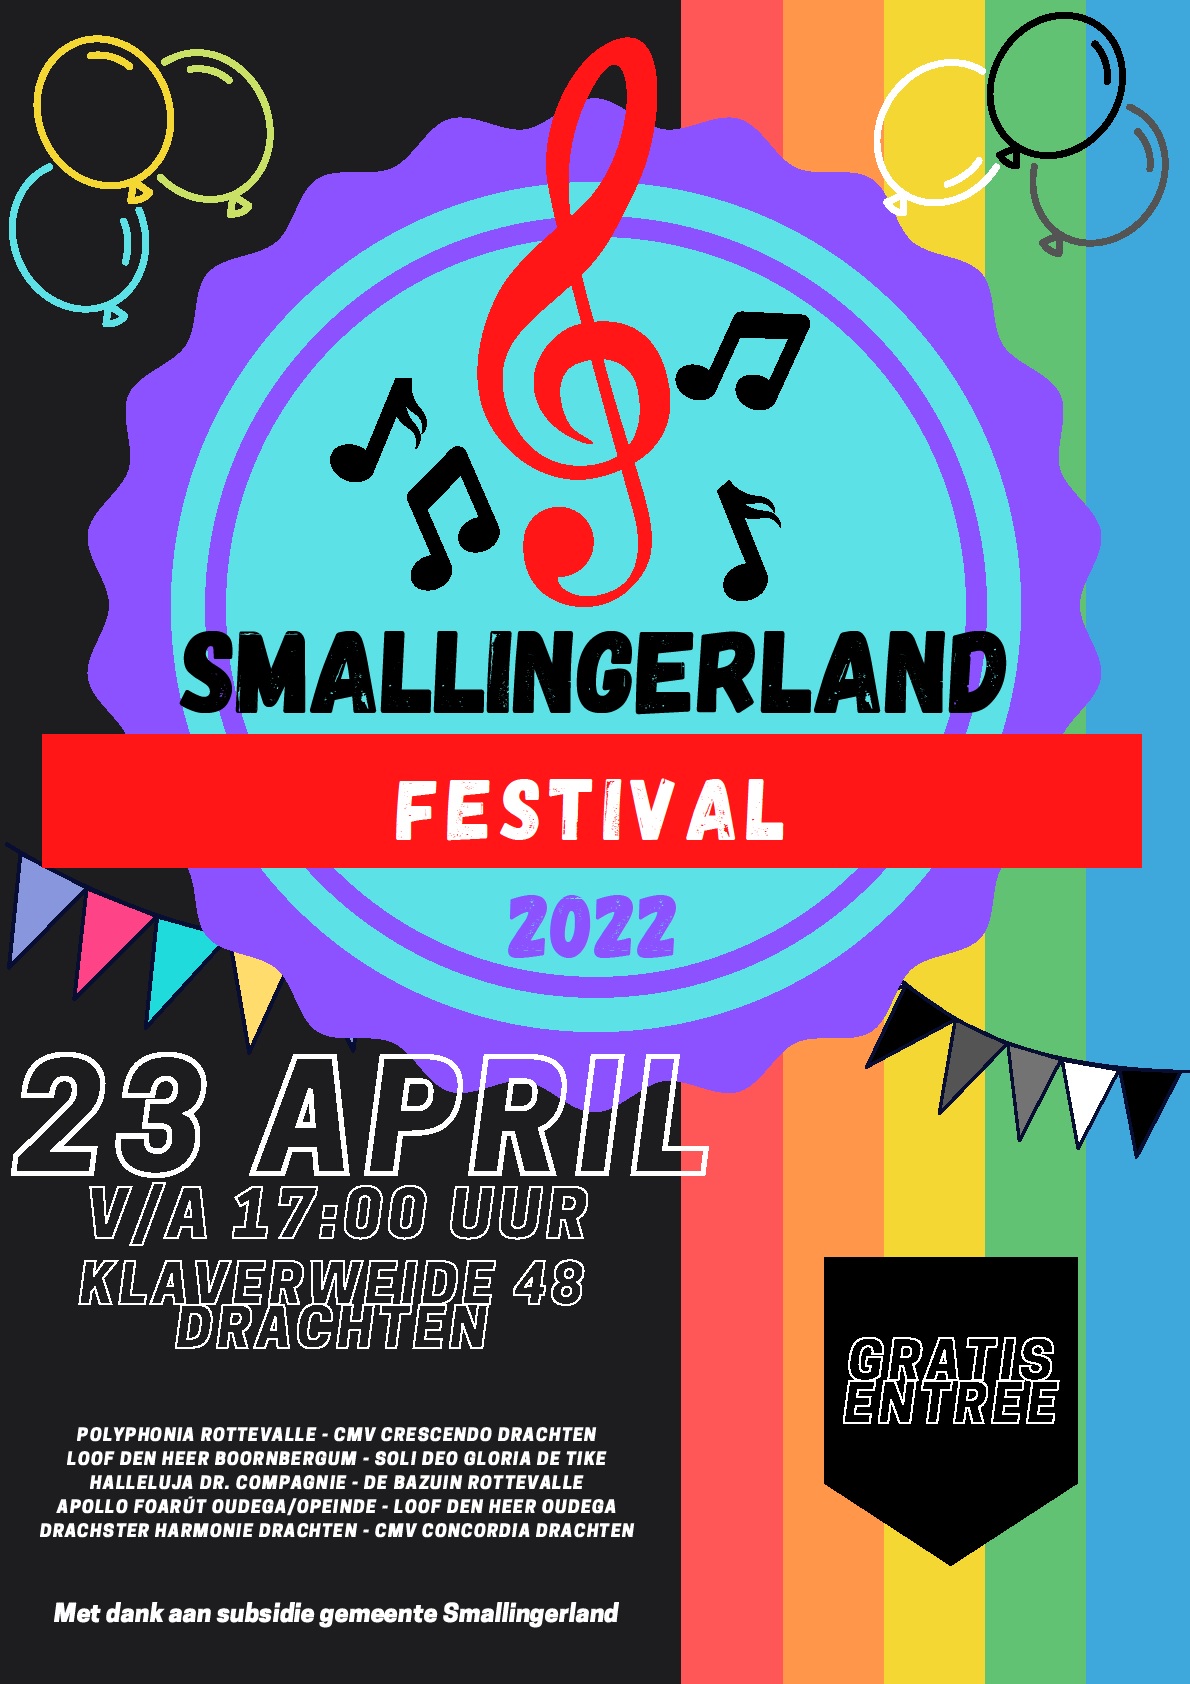 Smallingerland Festival 2022